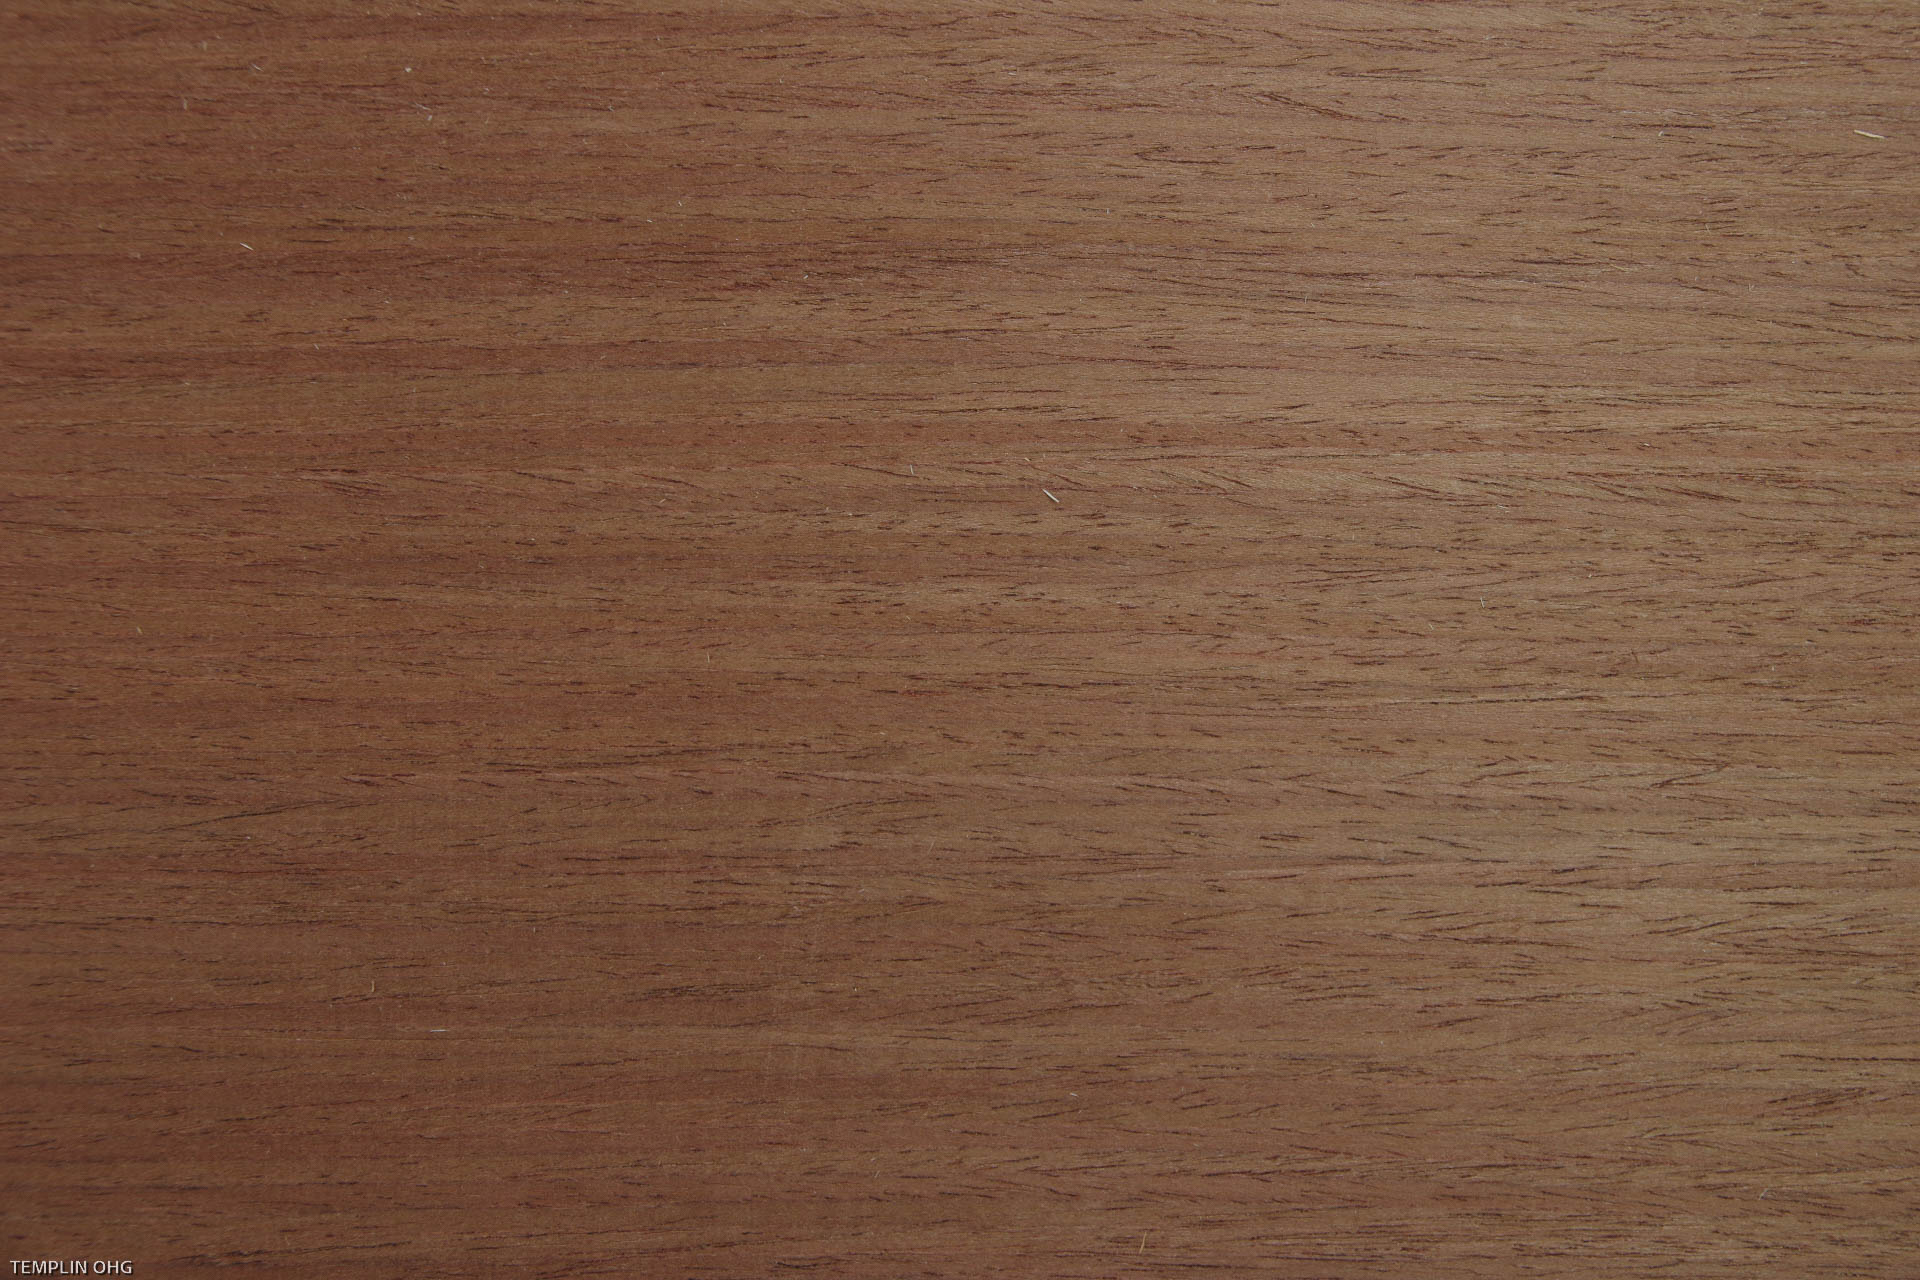 2,4mm braun gefärbtes Multilaminares Furnier 3,82m² Z 11 112 31